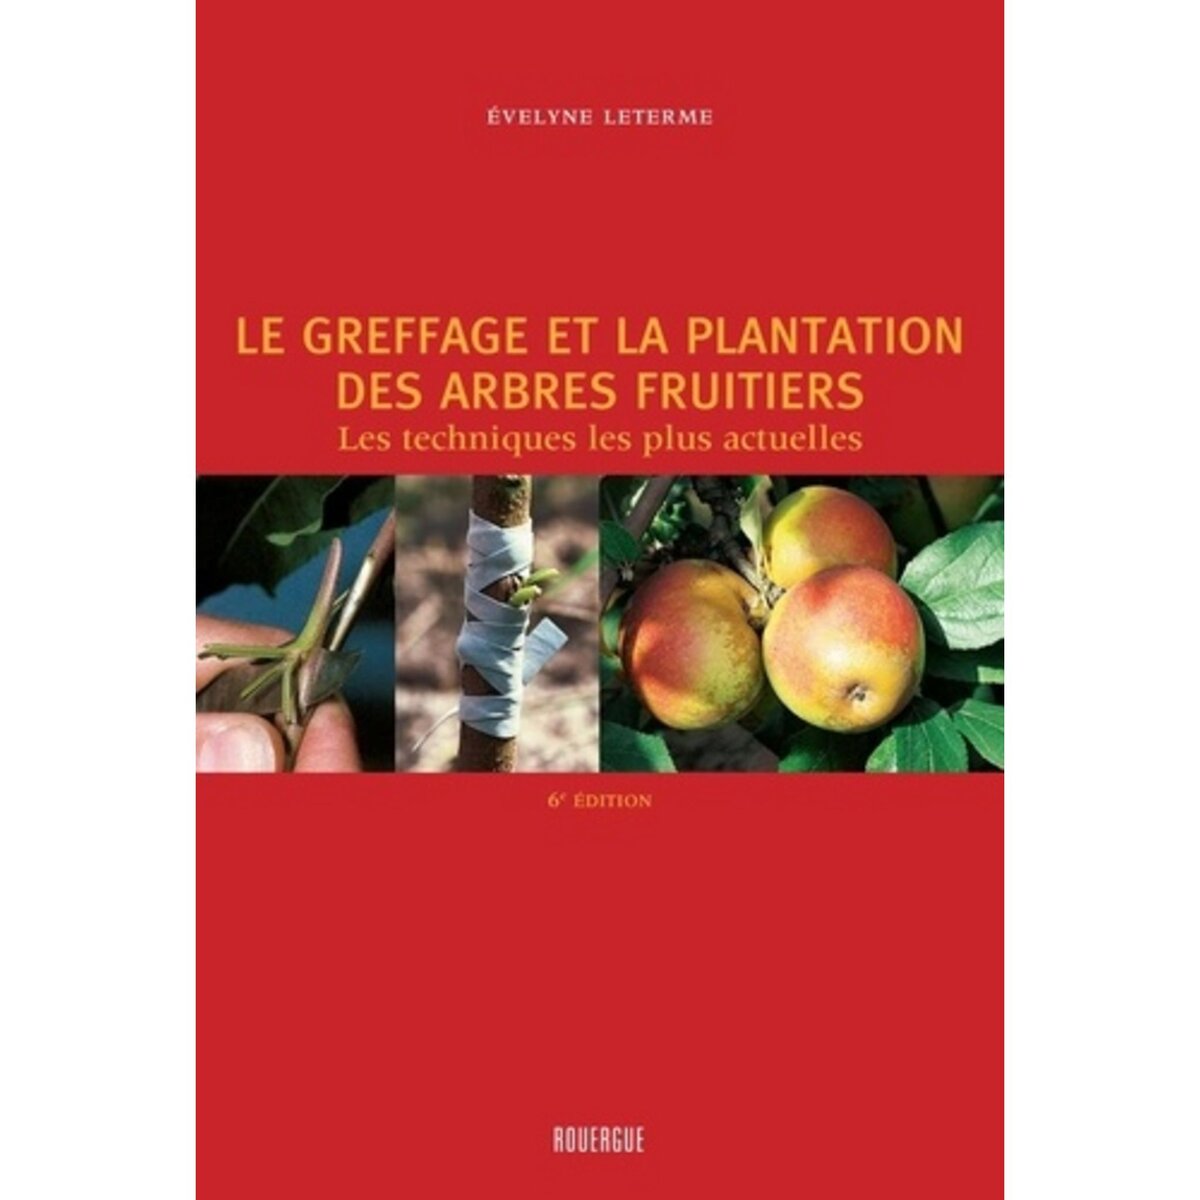  LE GREFFAGE ET LA PLANTATION DES ARBRES FRUITIERS. LES TECHNIQUES LES PLUS ACTUELLES, 4E EDITION, Leterme Evelyne